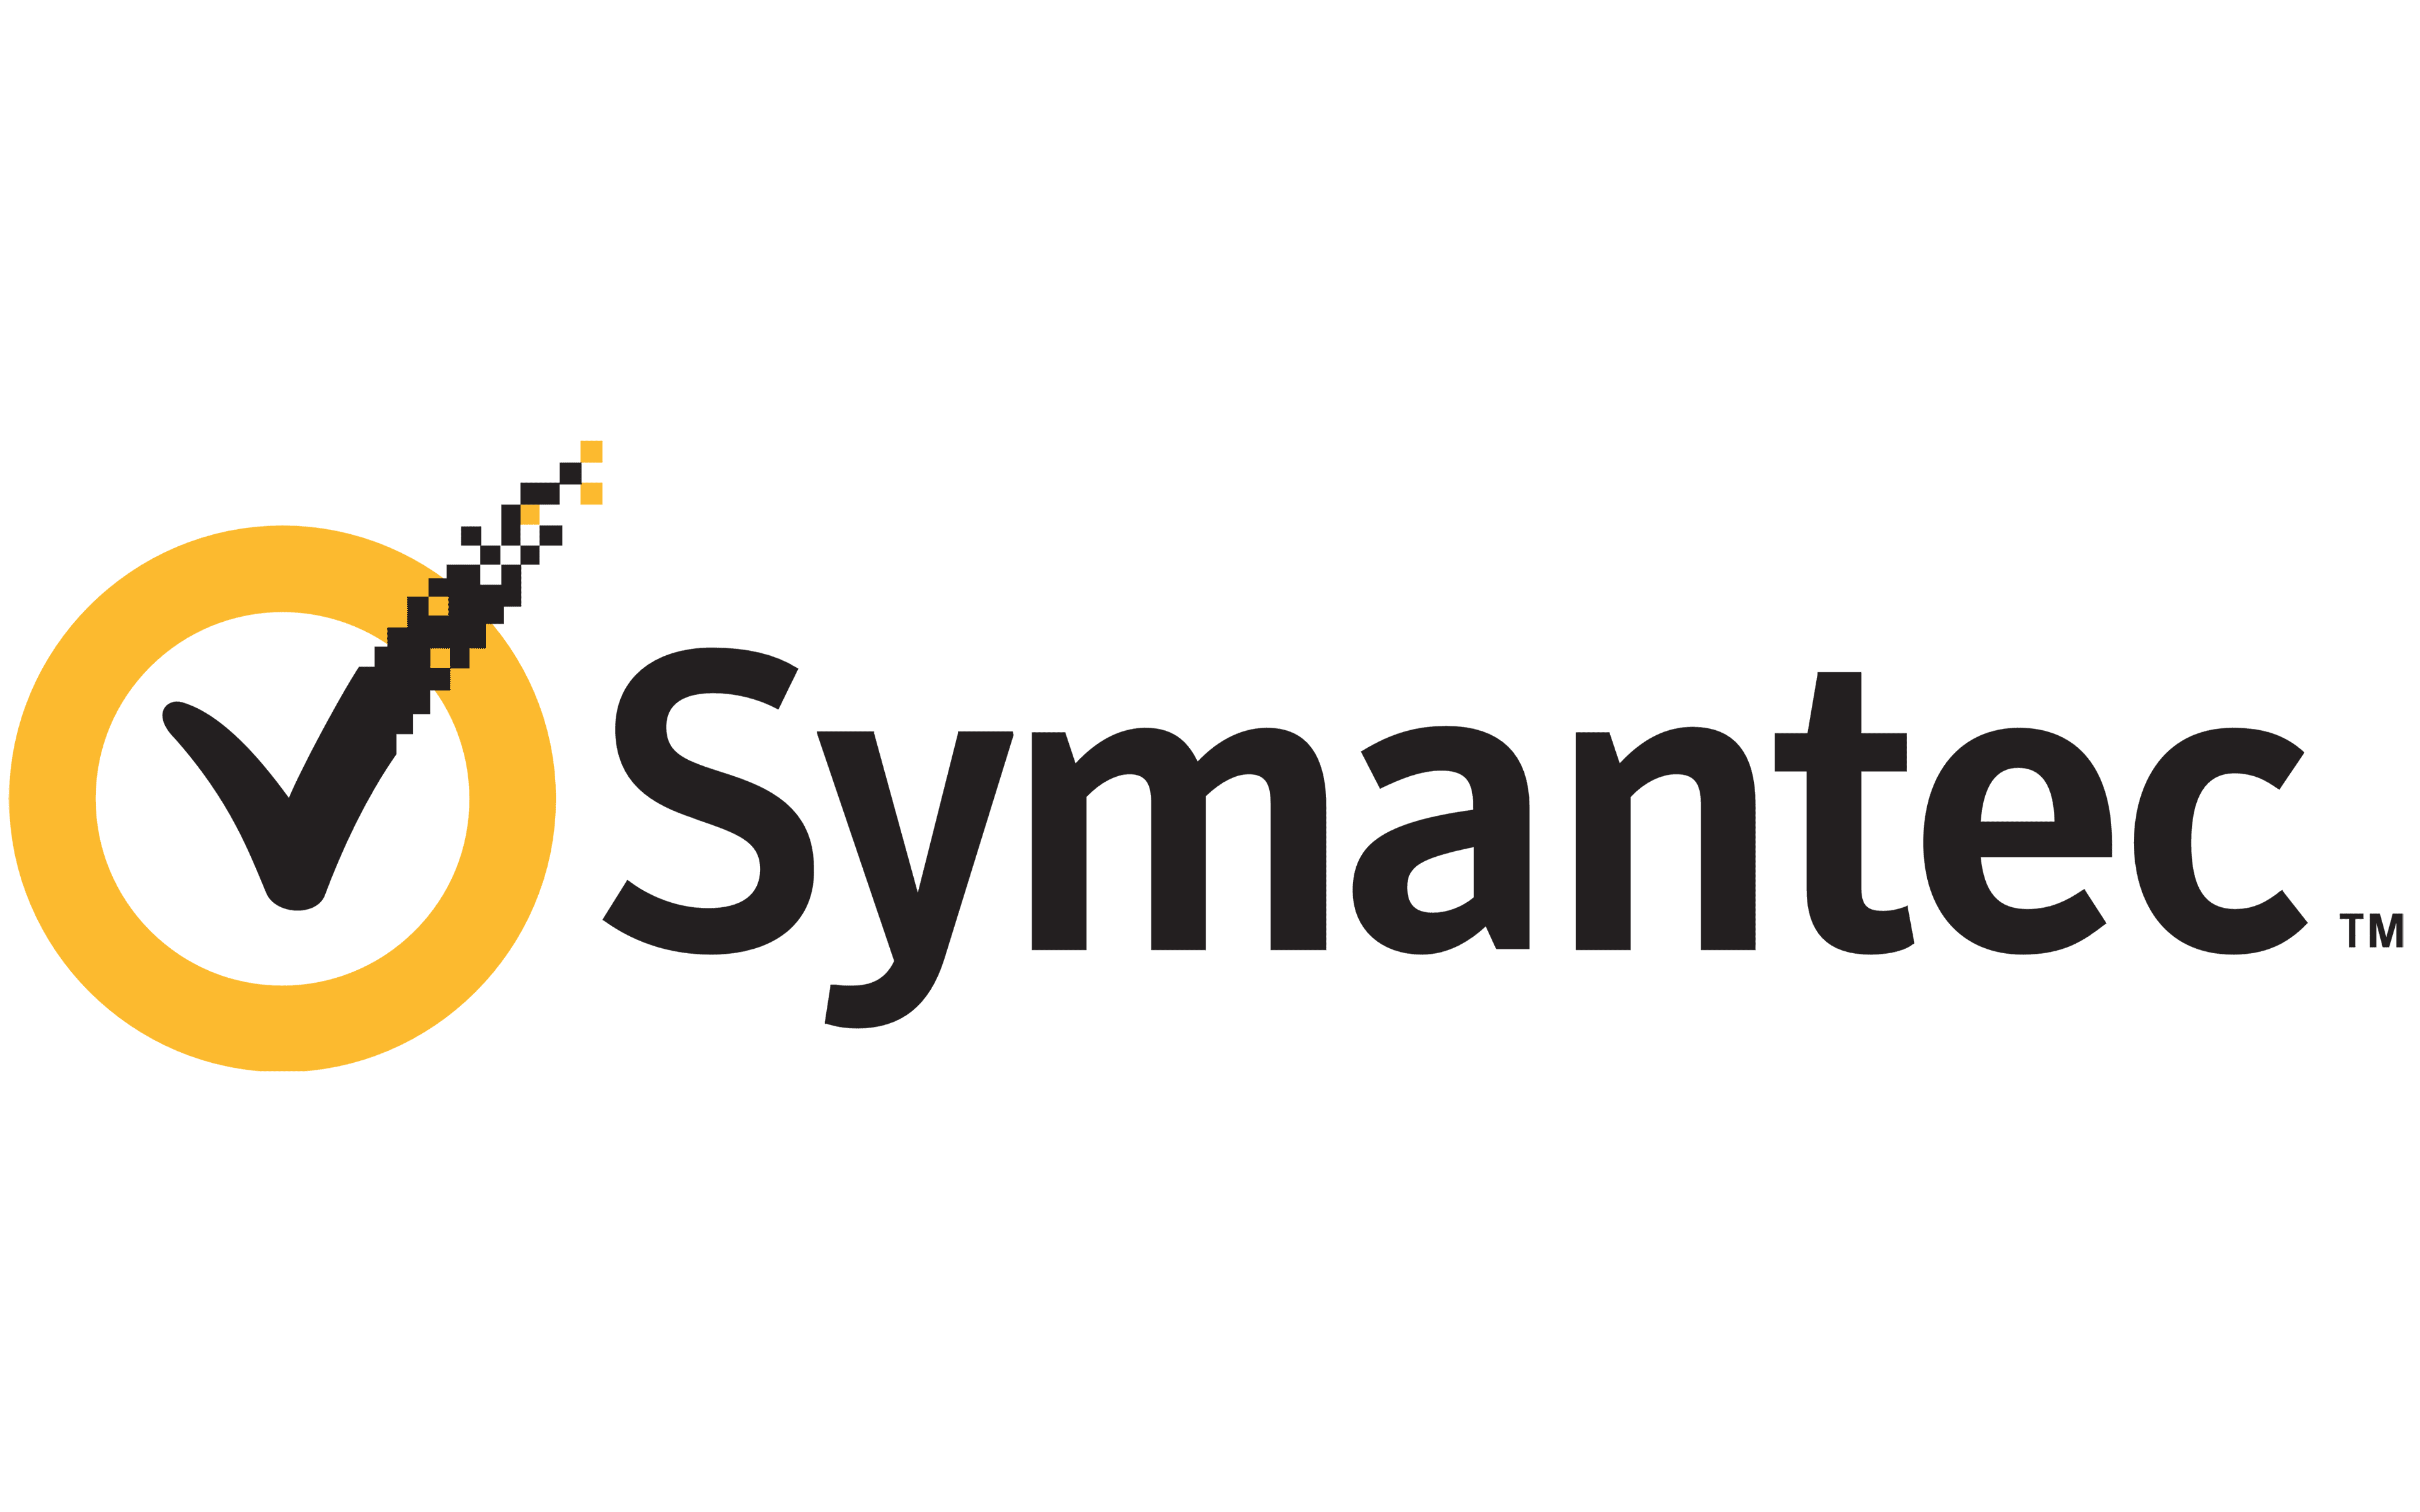 Symantec antivirus license